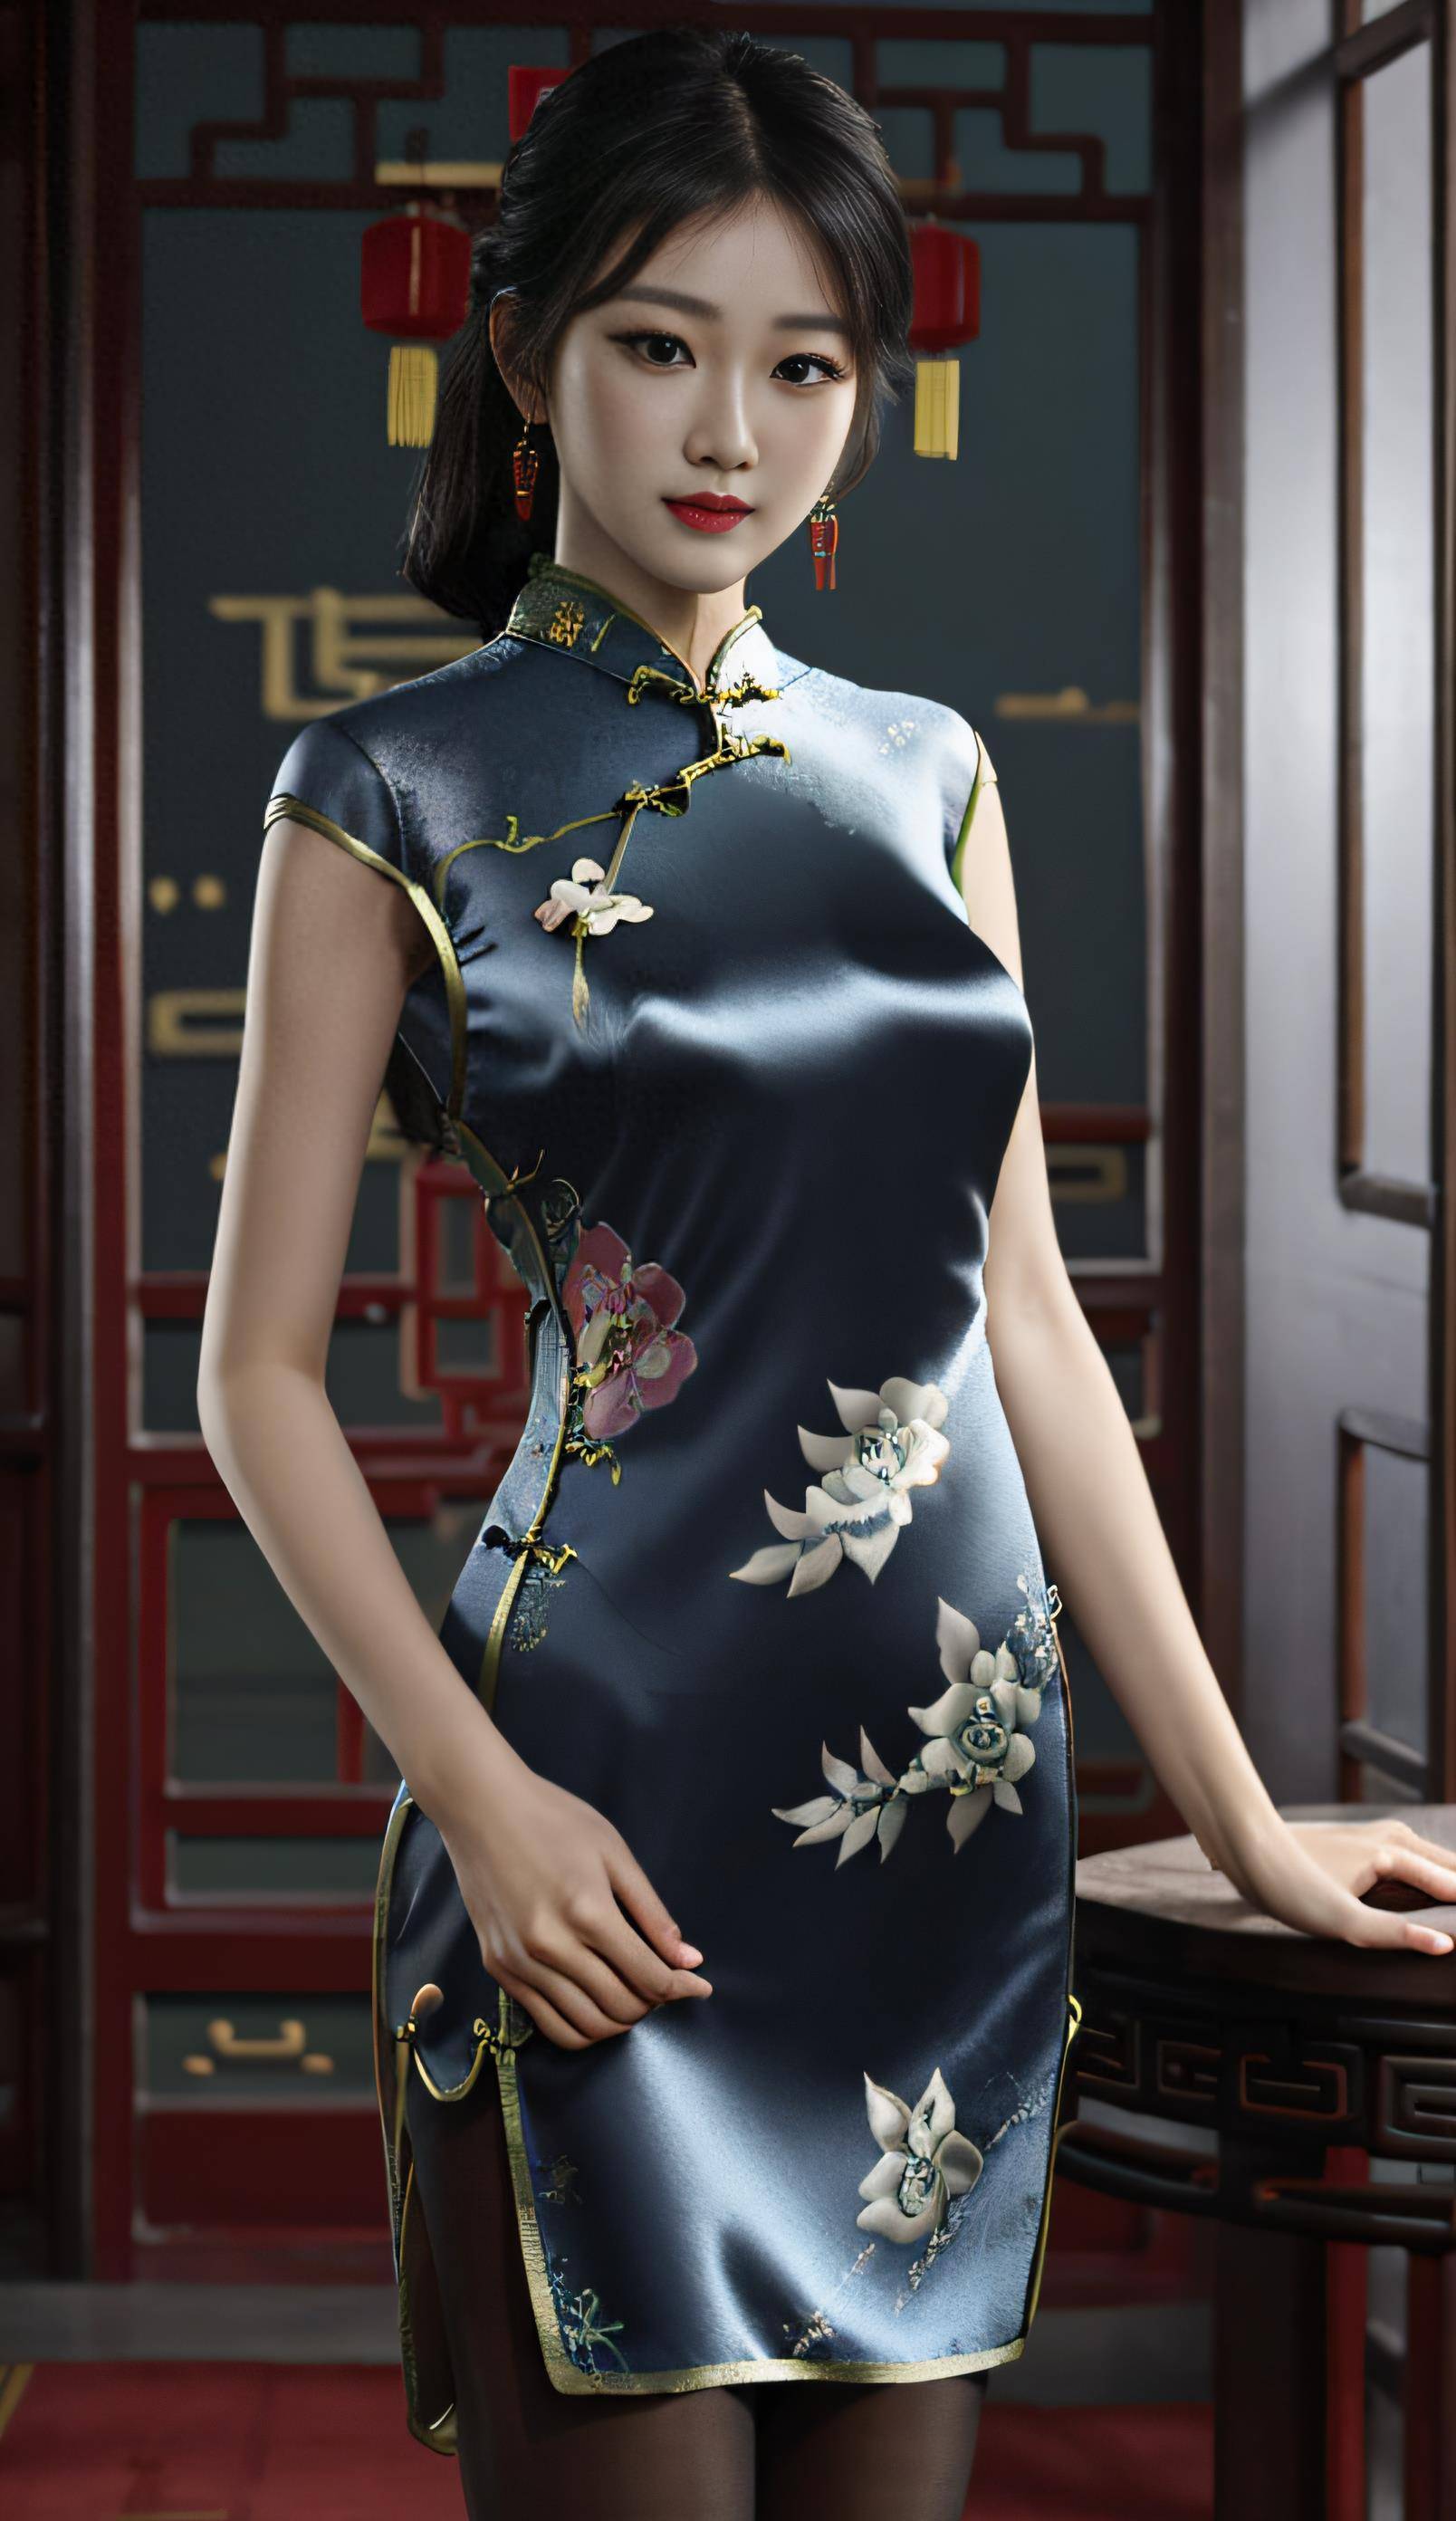 民国风真丝旗袍写真:高贵与性感的完美融合